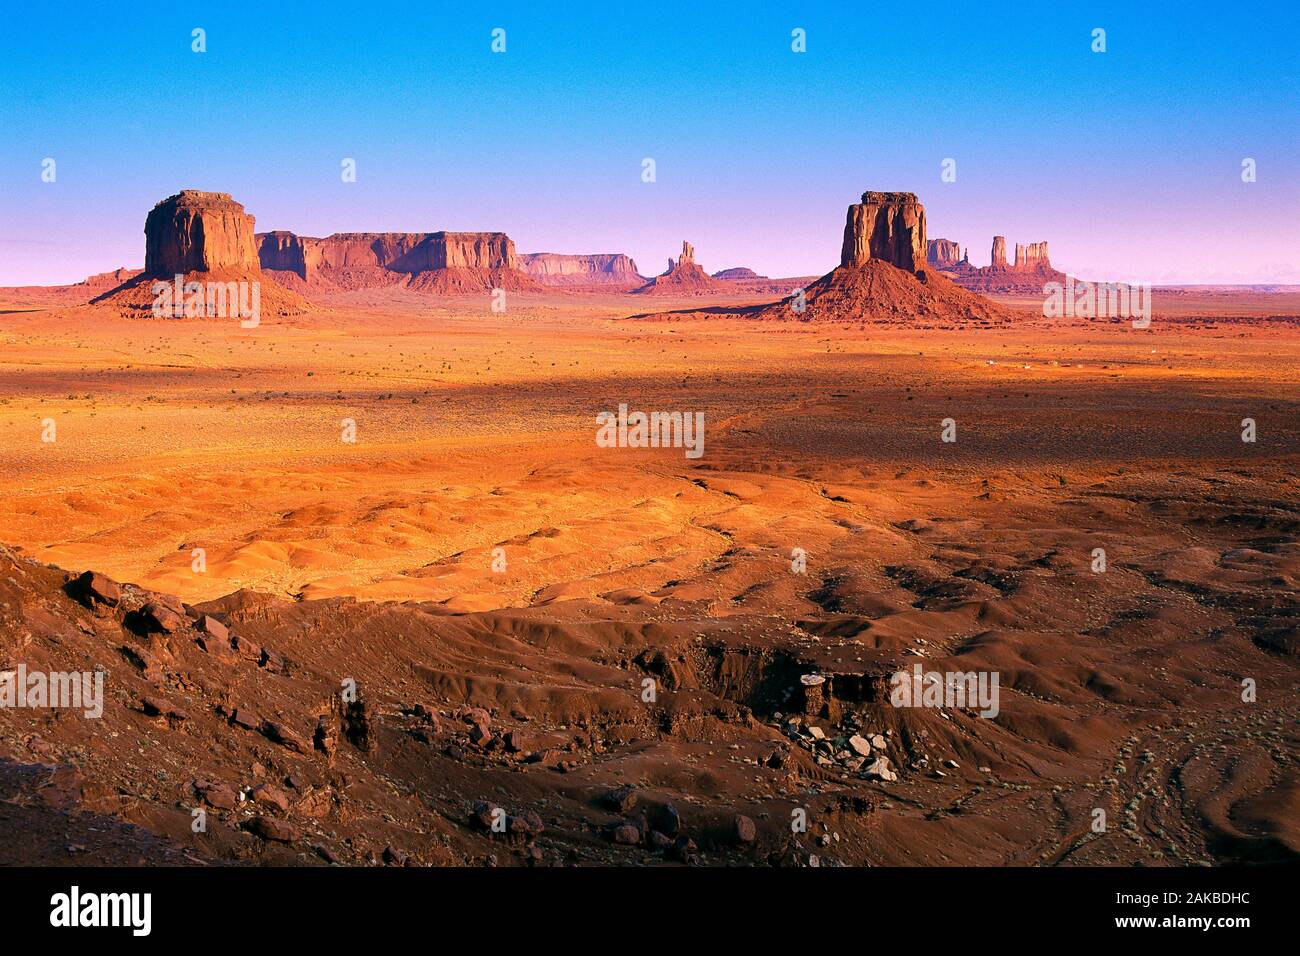 Paisaje con formaciones rocosas butte en desierto, Navajo Tribal Park, Monument Valley, Arizona, EE.UU. Foto de stock